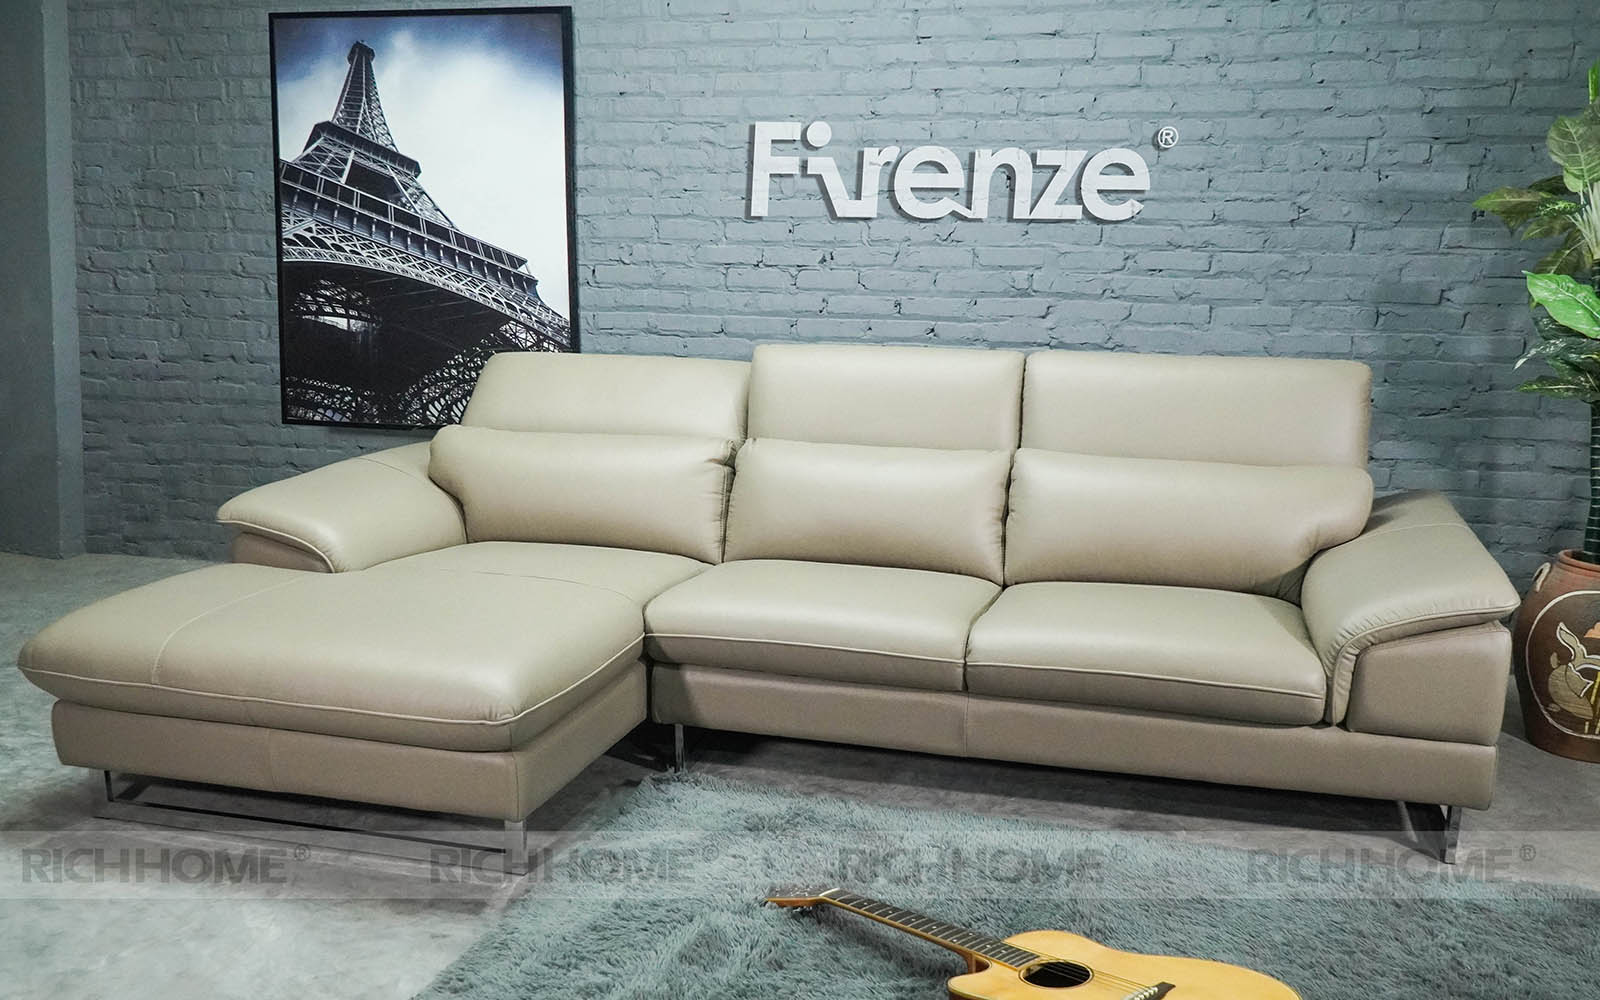 Chia sẻ cách lựa chọn sofa phòng khách theo phong thuỷ - Ảnh 2